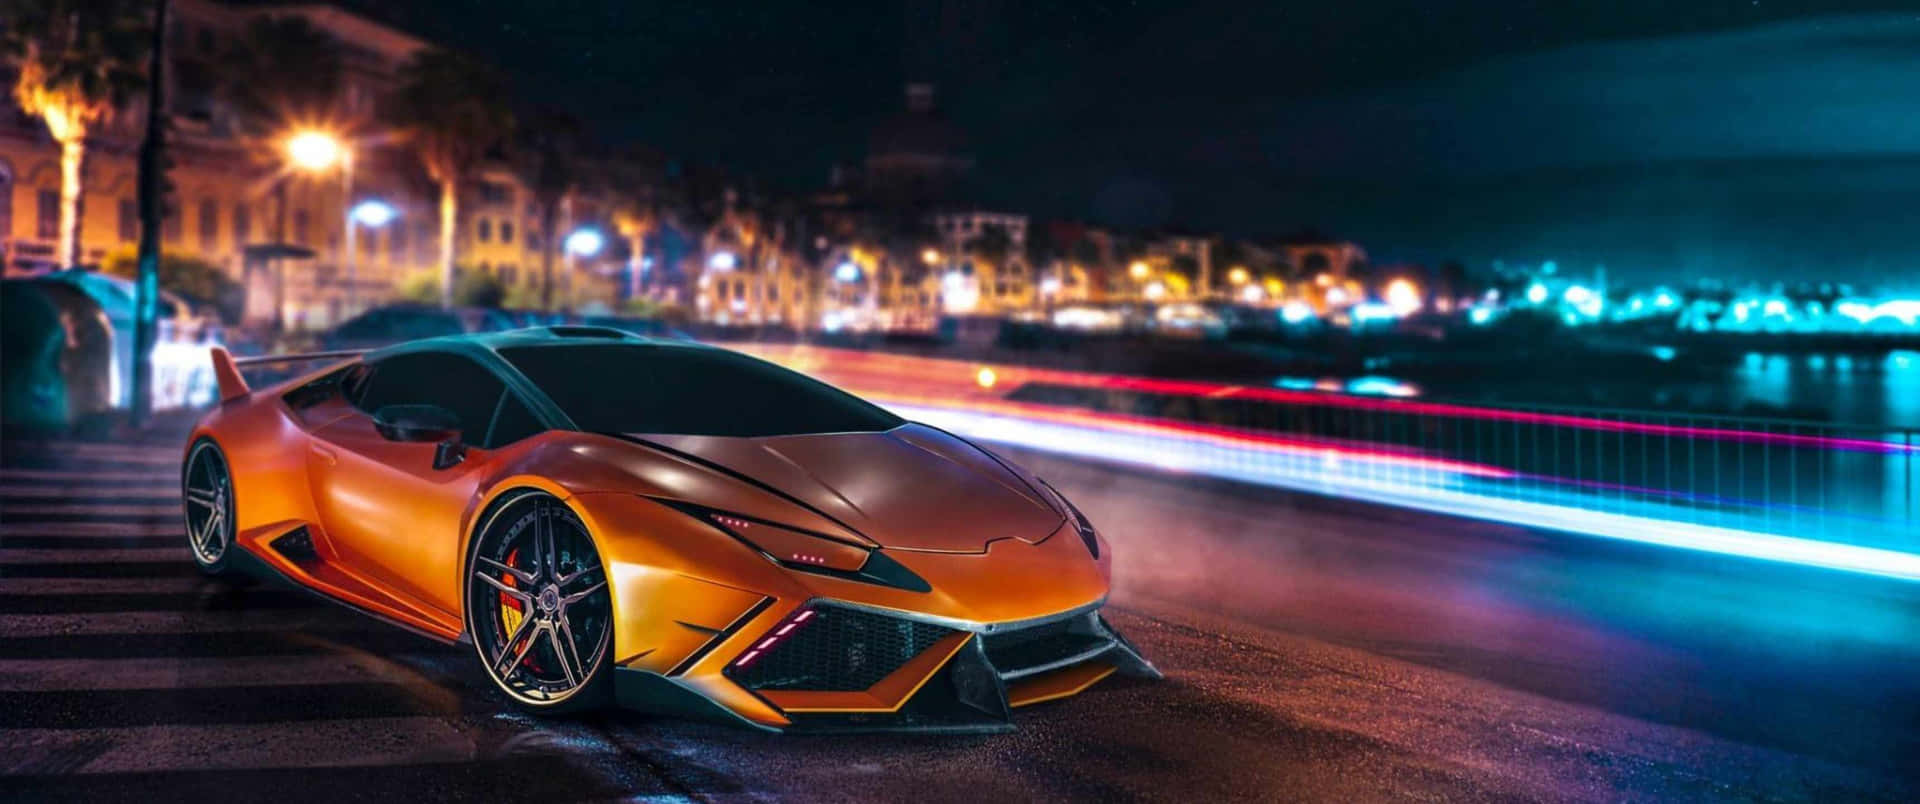 Sienteel Poder De Un Superauto Lamborghini